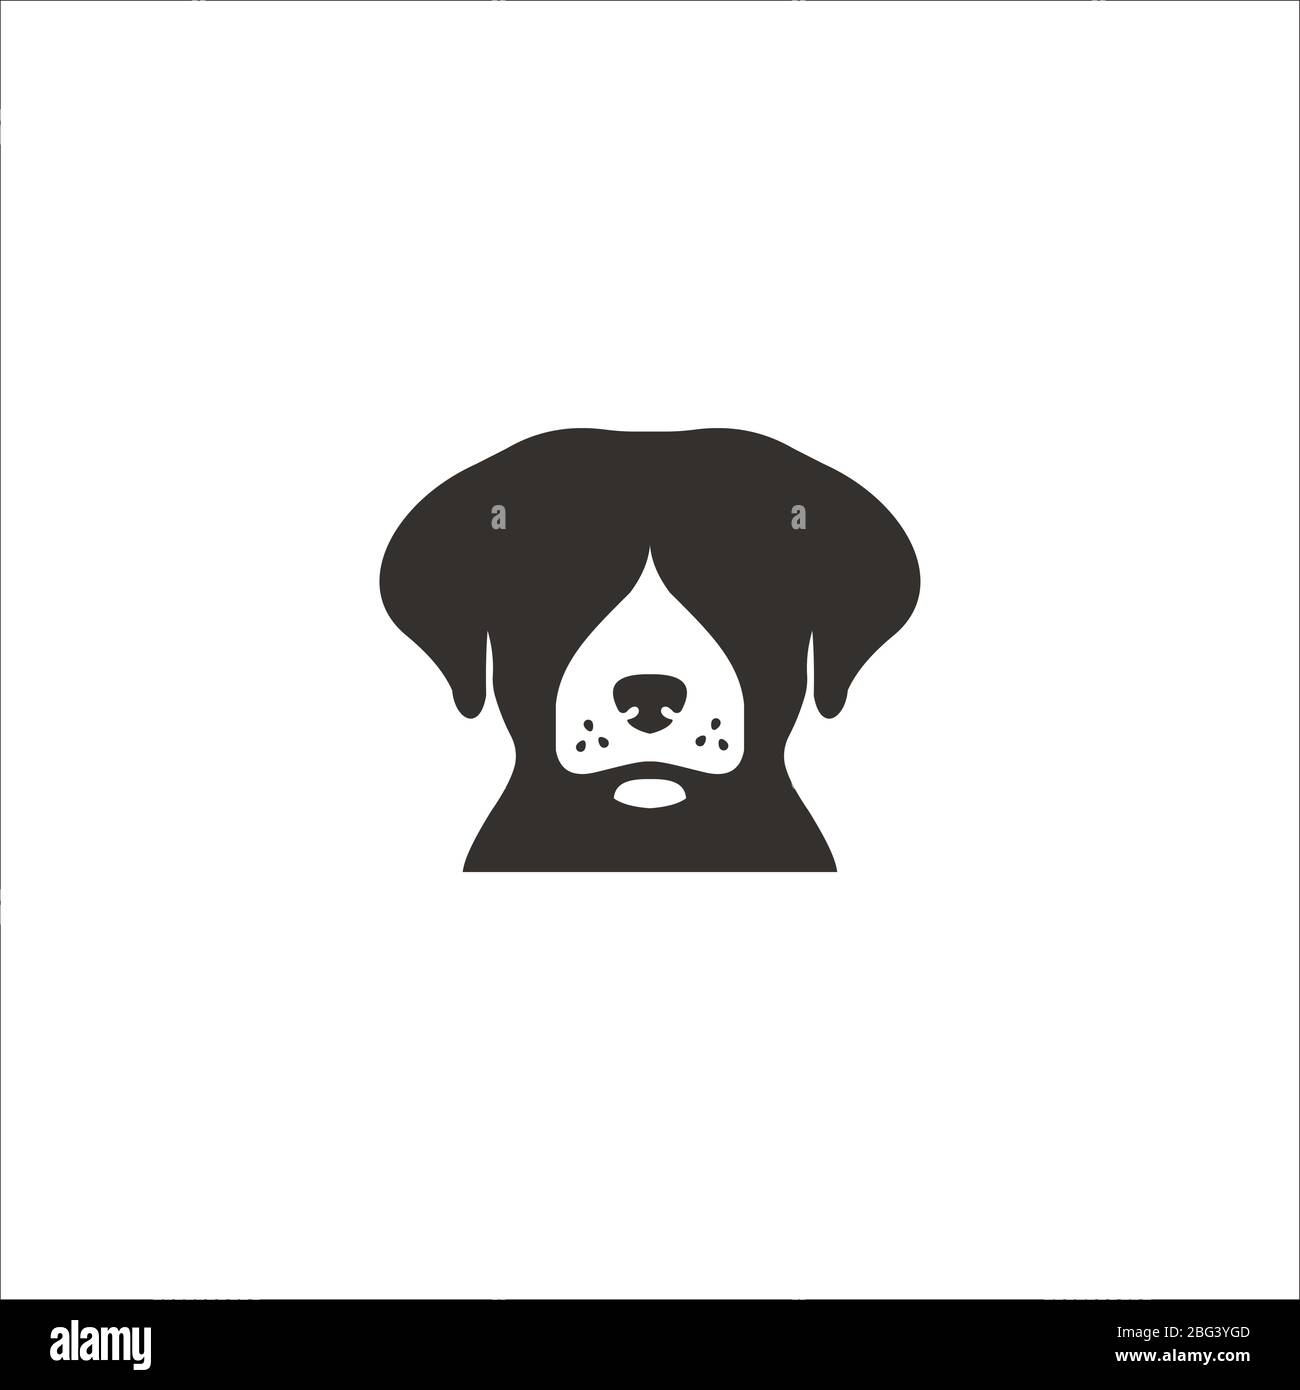 Animal dog logo vector design templates Stock Vector